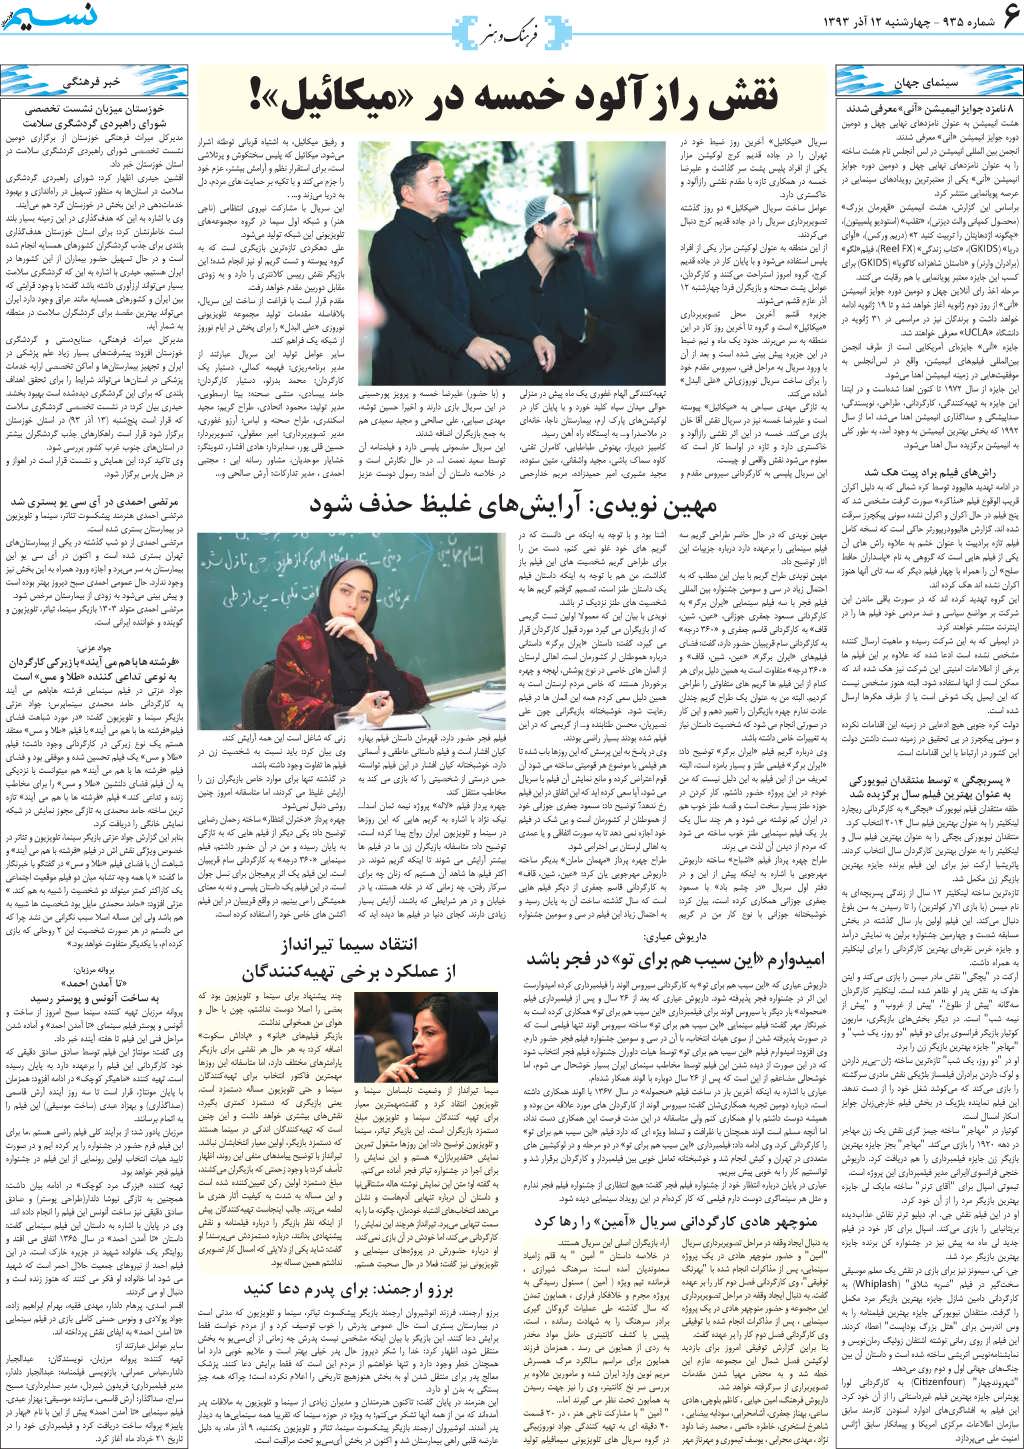 صفحه فرهنگ و هنر روزنامه نسیم شماره 935